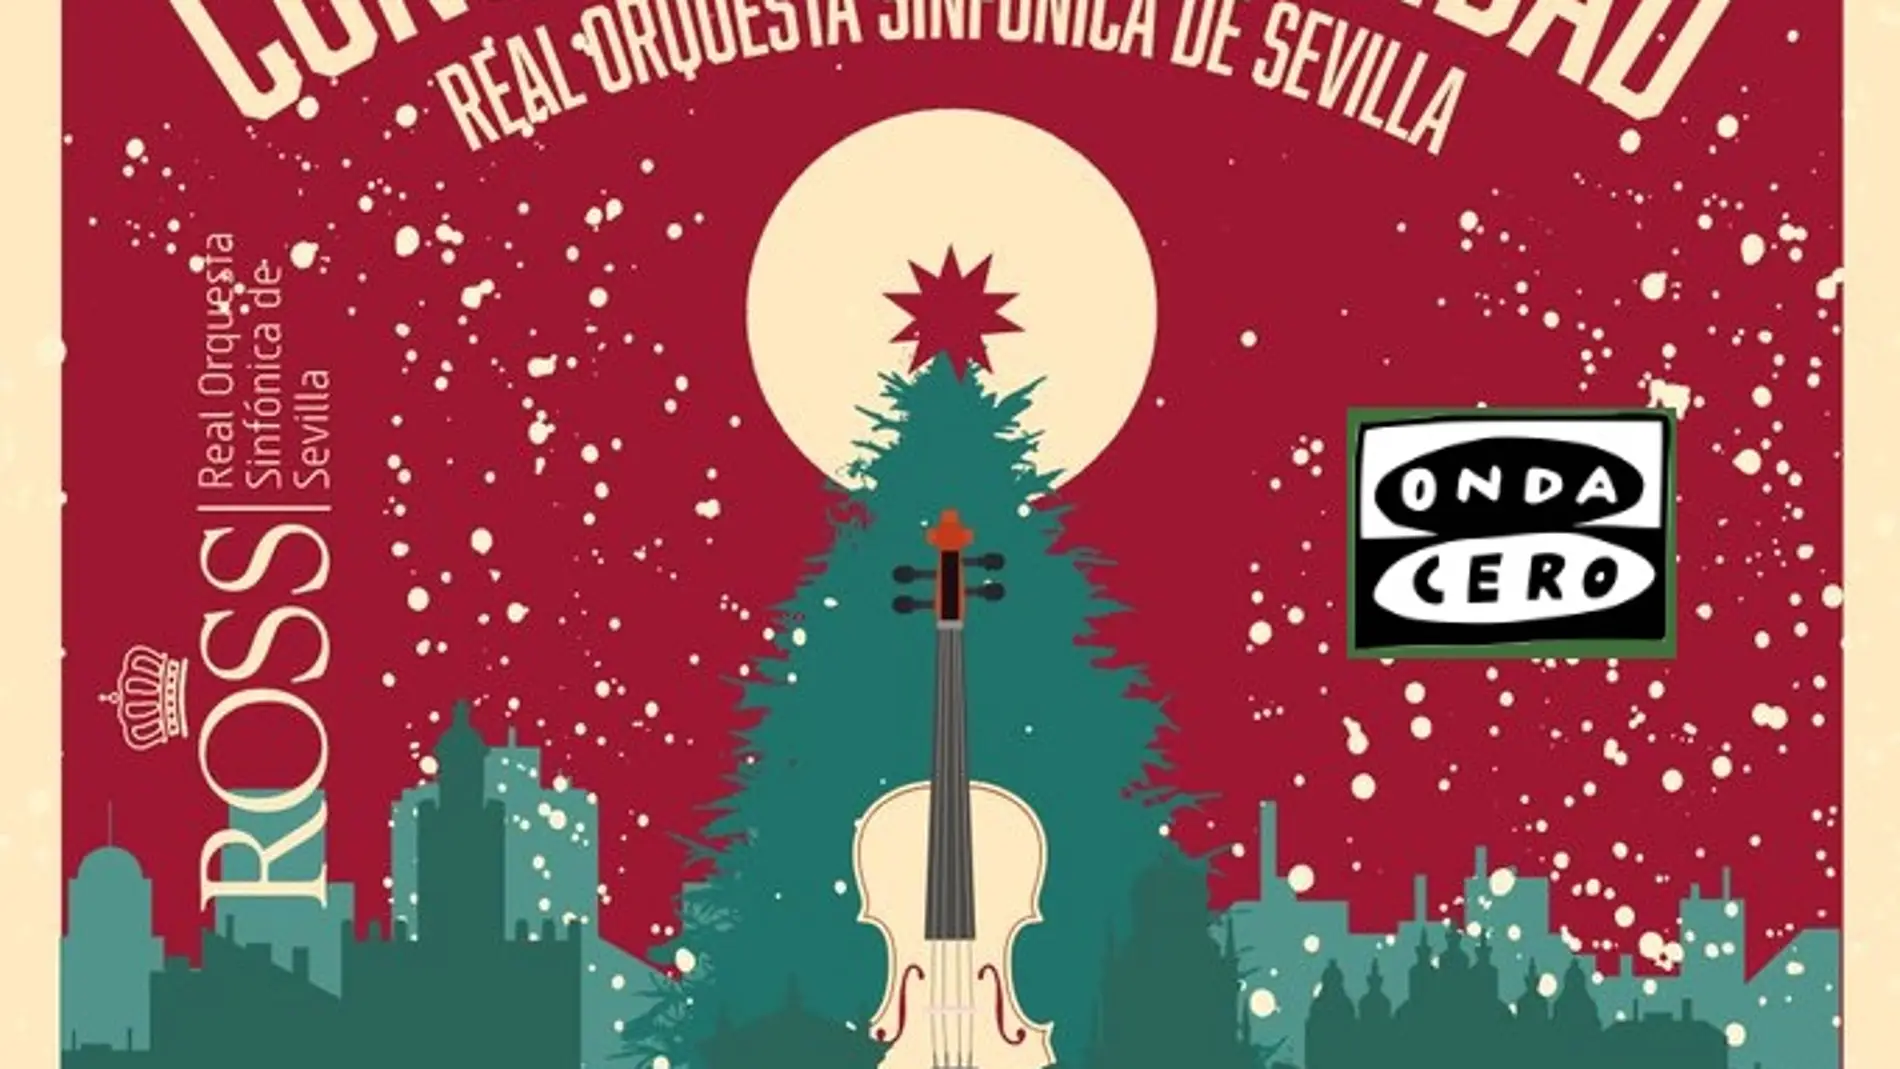 Onda Cero Sevilla patrocina por segundo año consecutivo el concierto de Navidad de la ROSS en el Teatro de la Maestranza